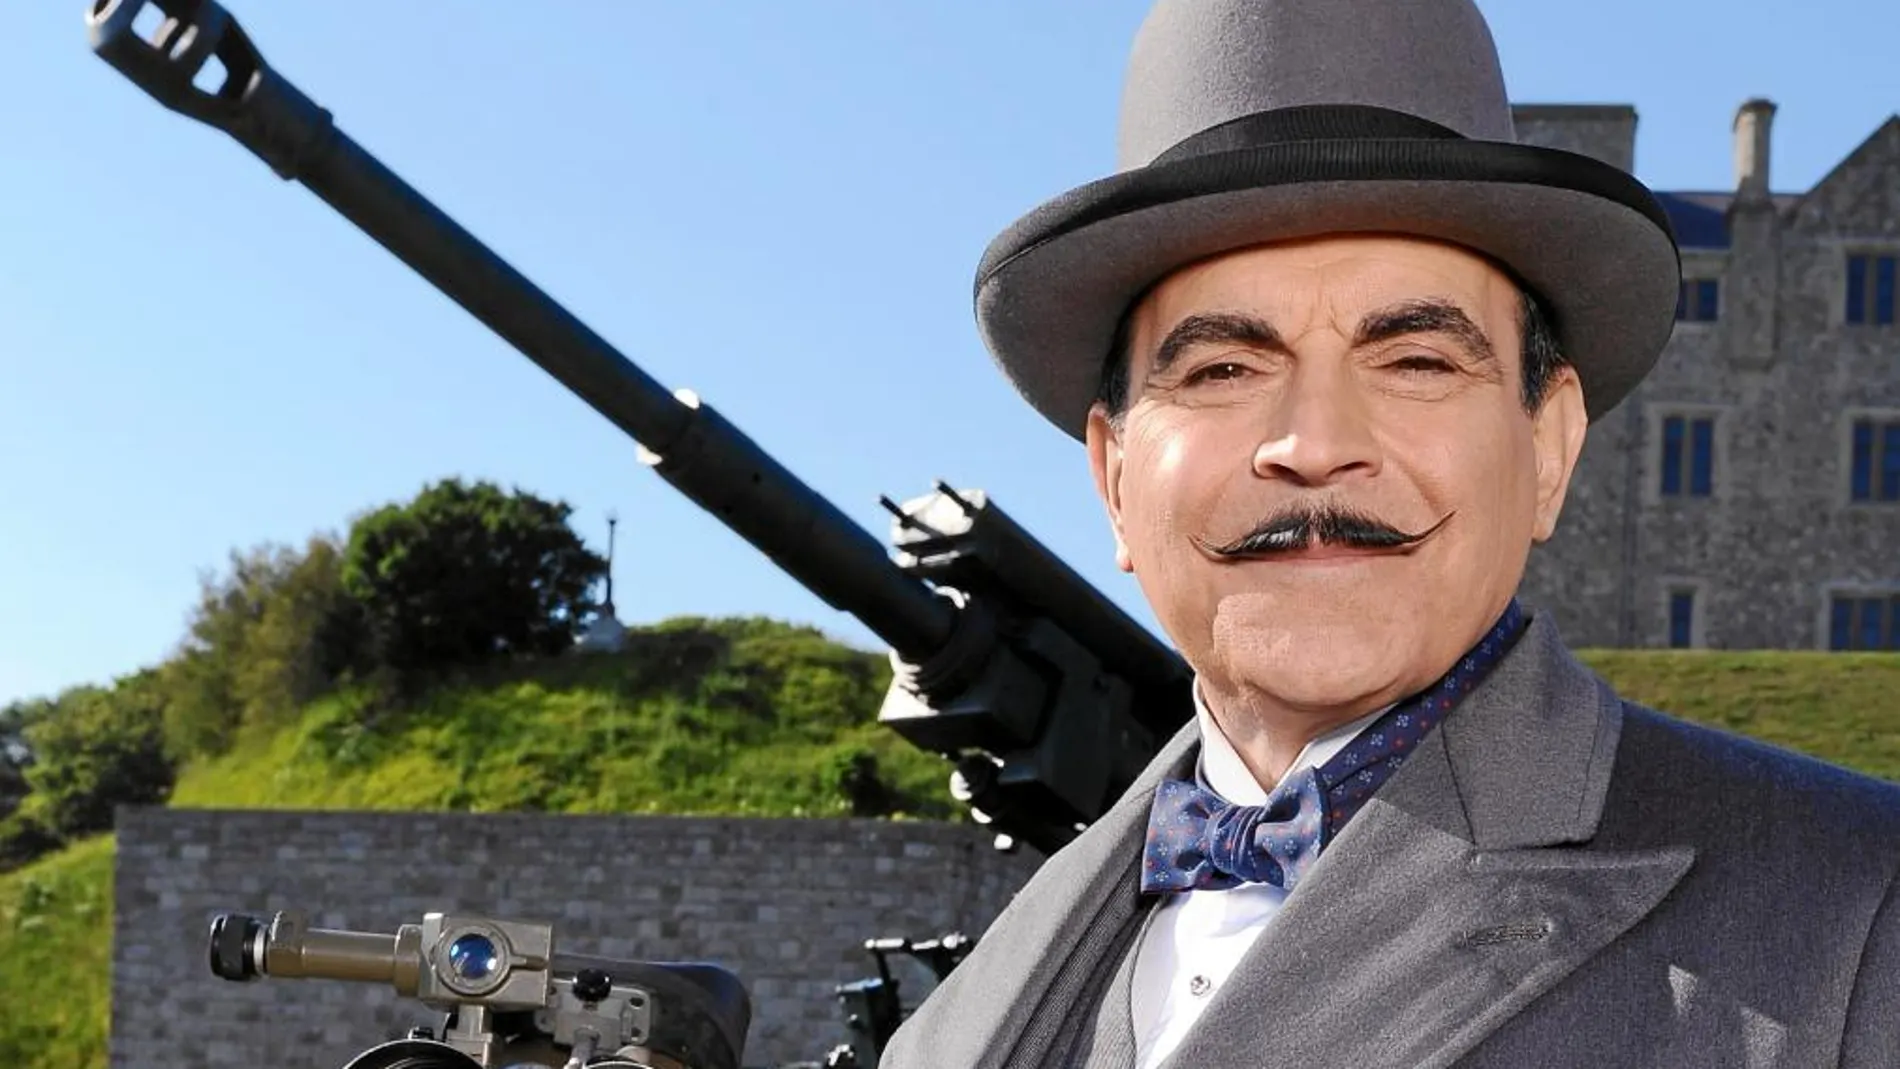 Hércules Poirot regresa al lugar del crimen